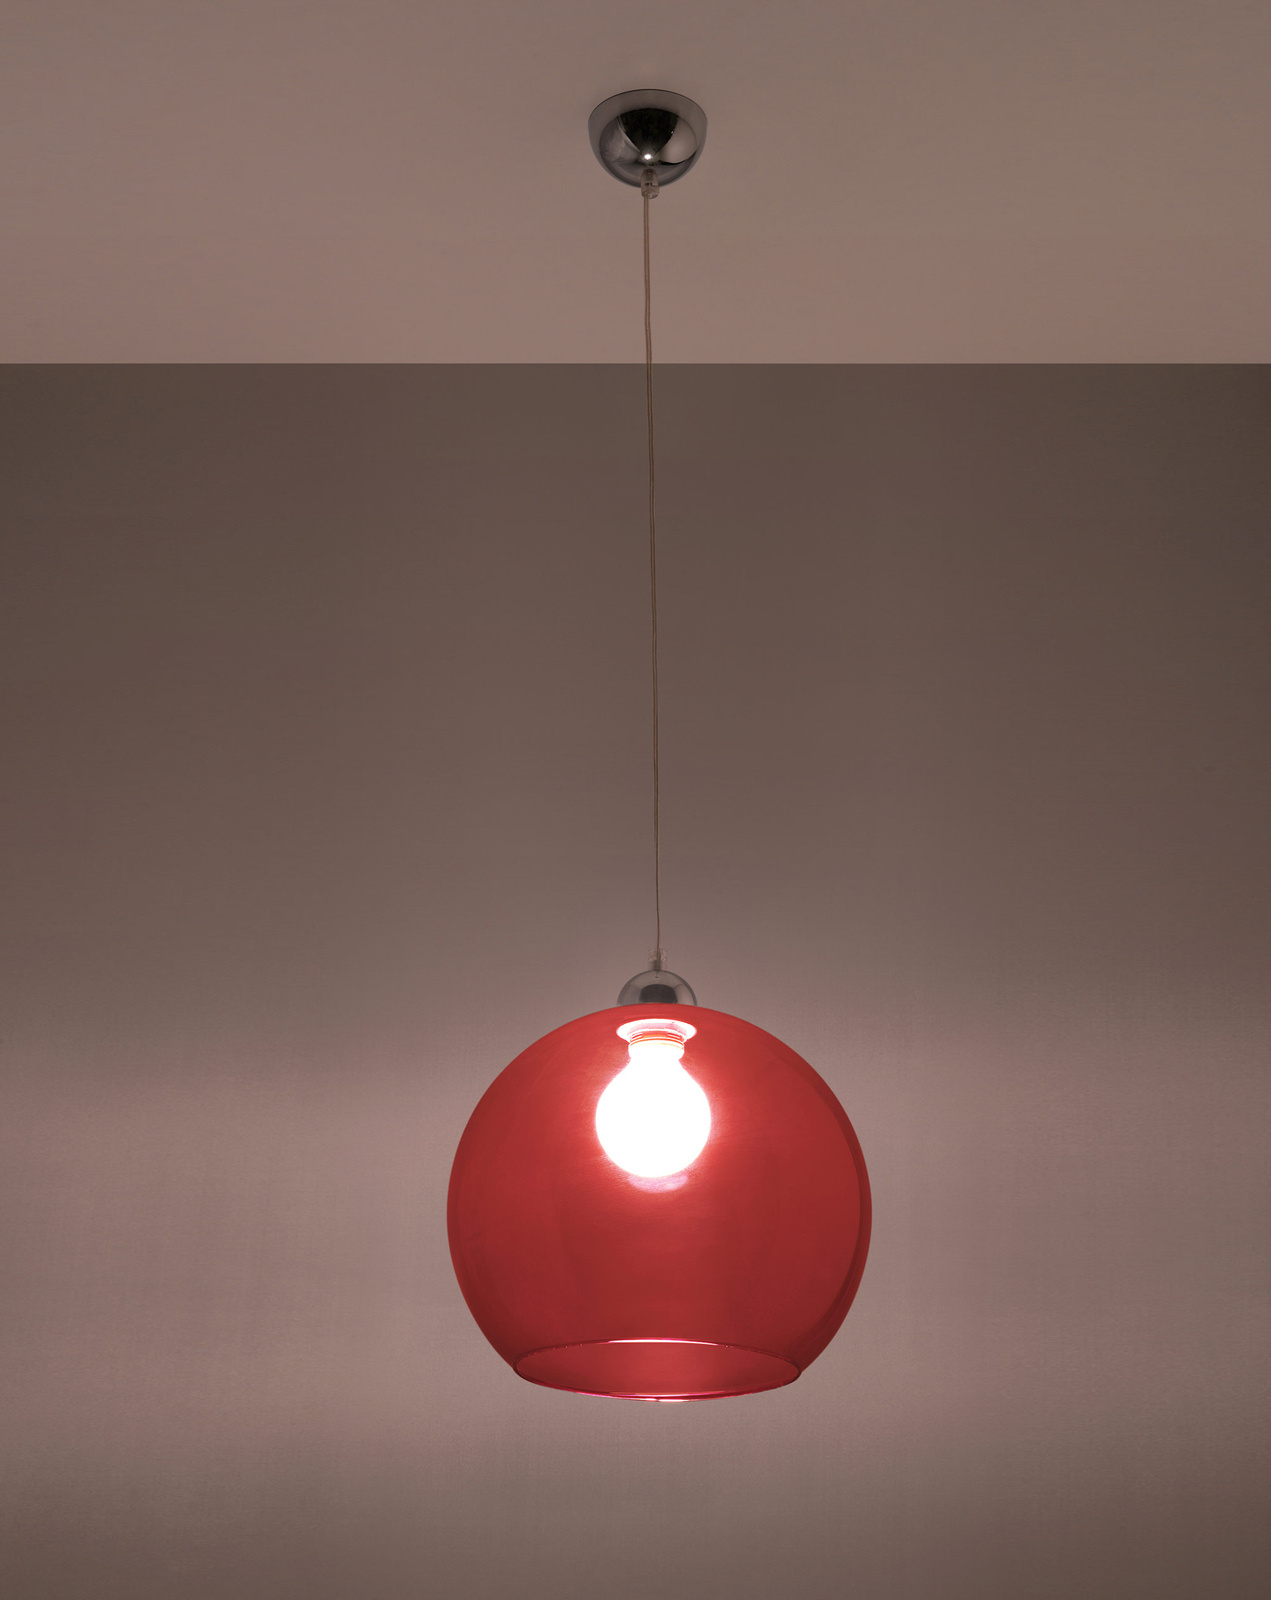 Lampa wisząca BALL czerwony + 1x Żarówka LED E27 4000K Zimna 7,5W 650lm